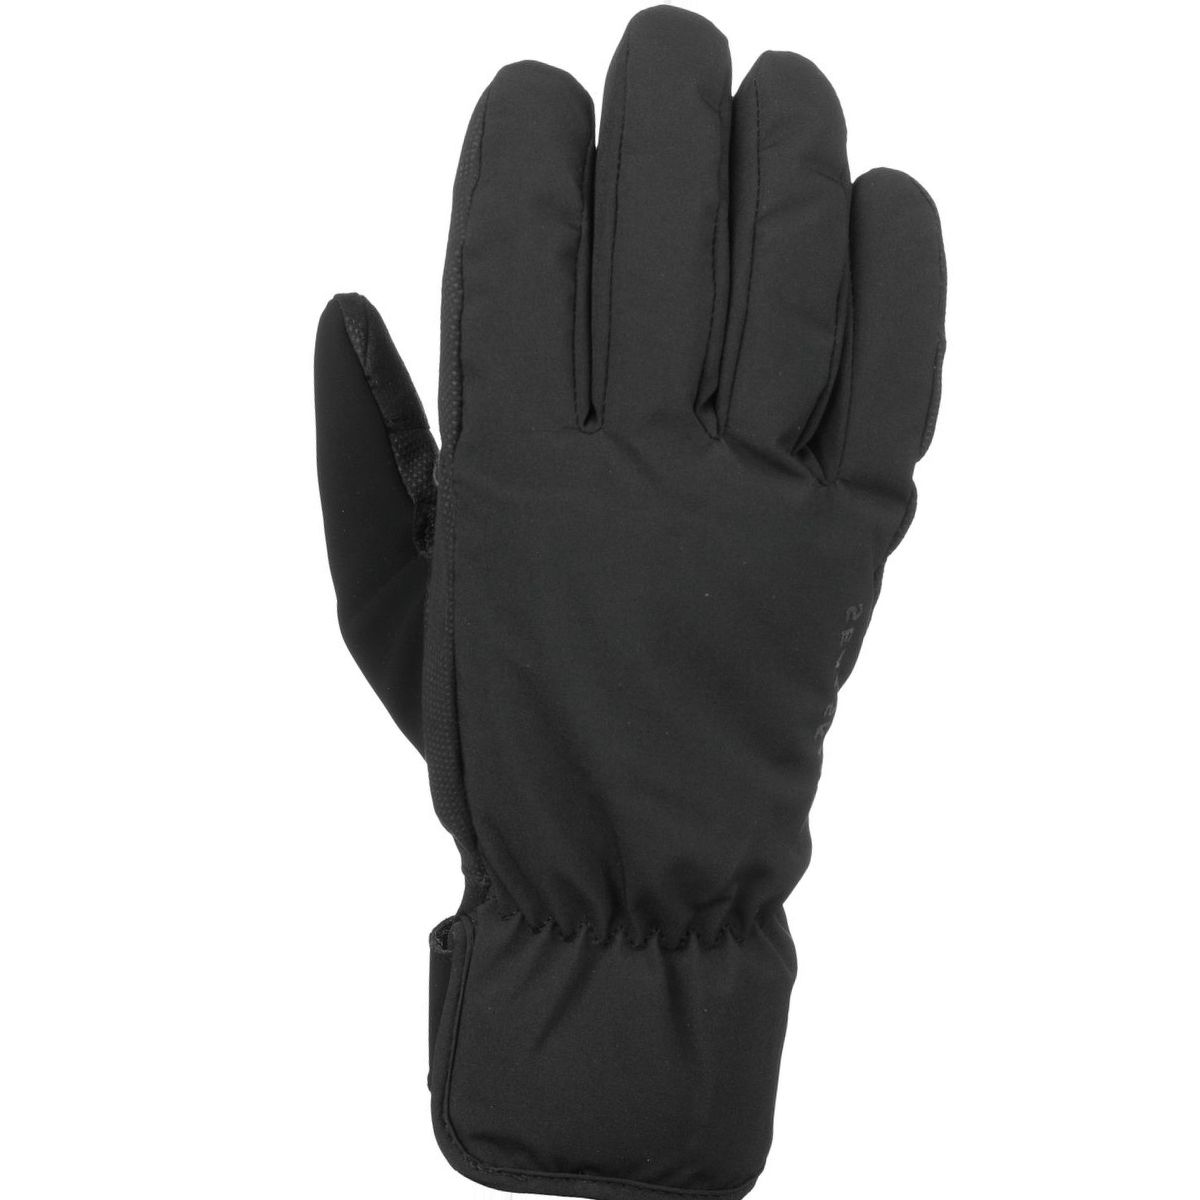 SealSkinz Brecon Glove - Men's